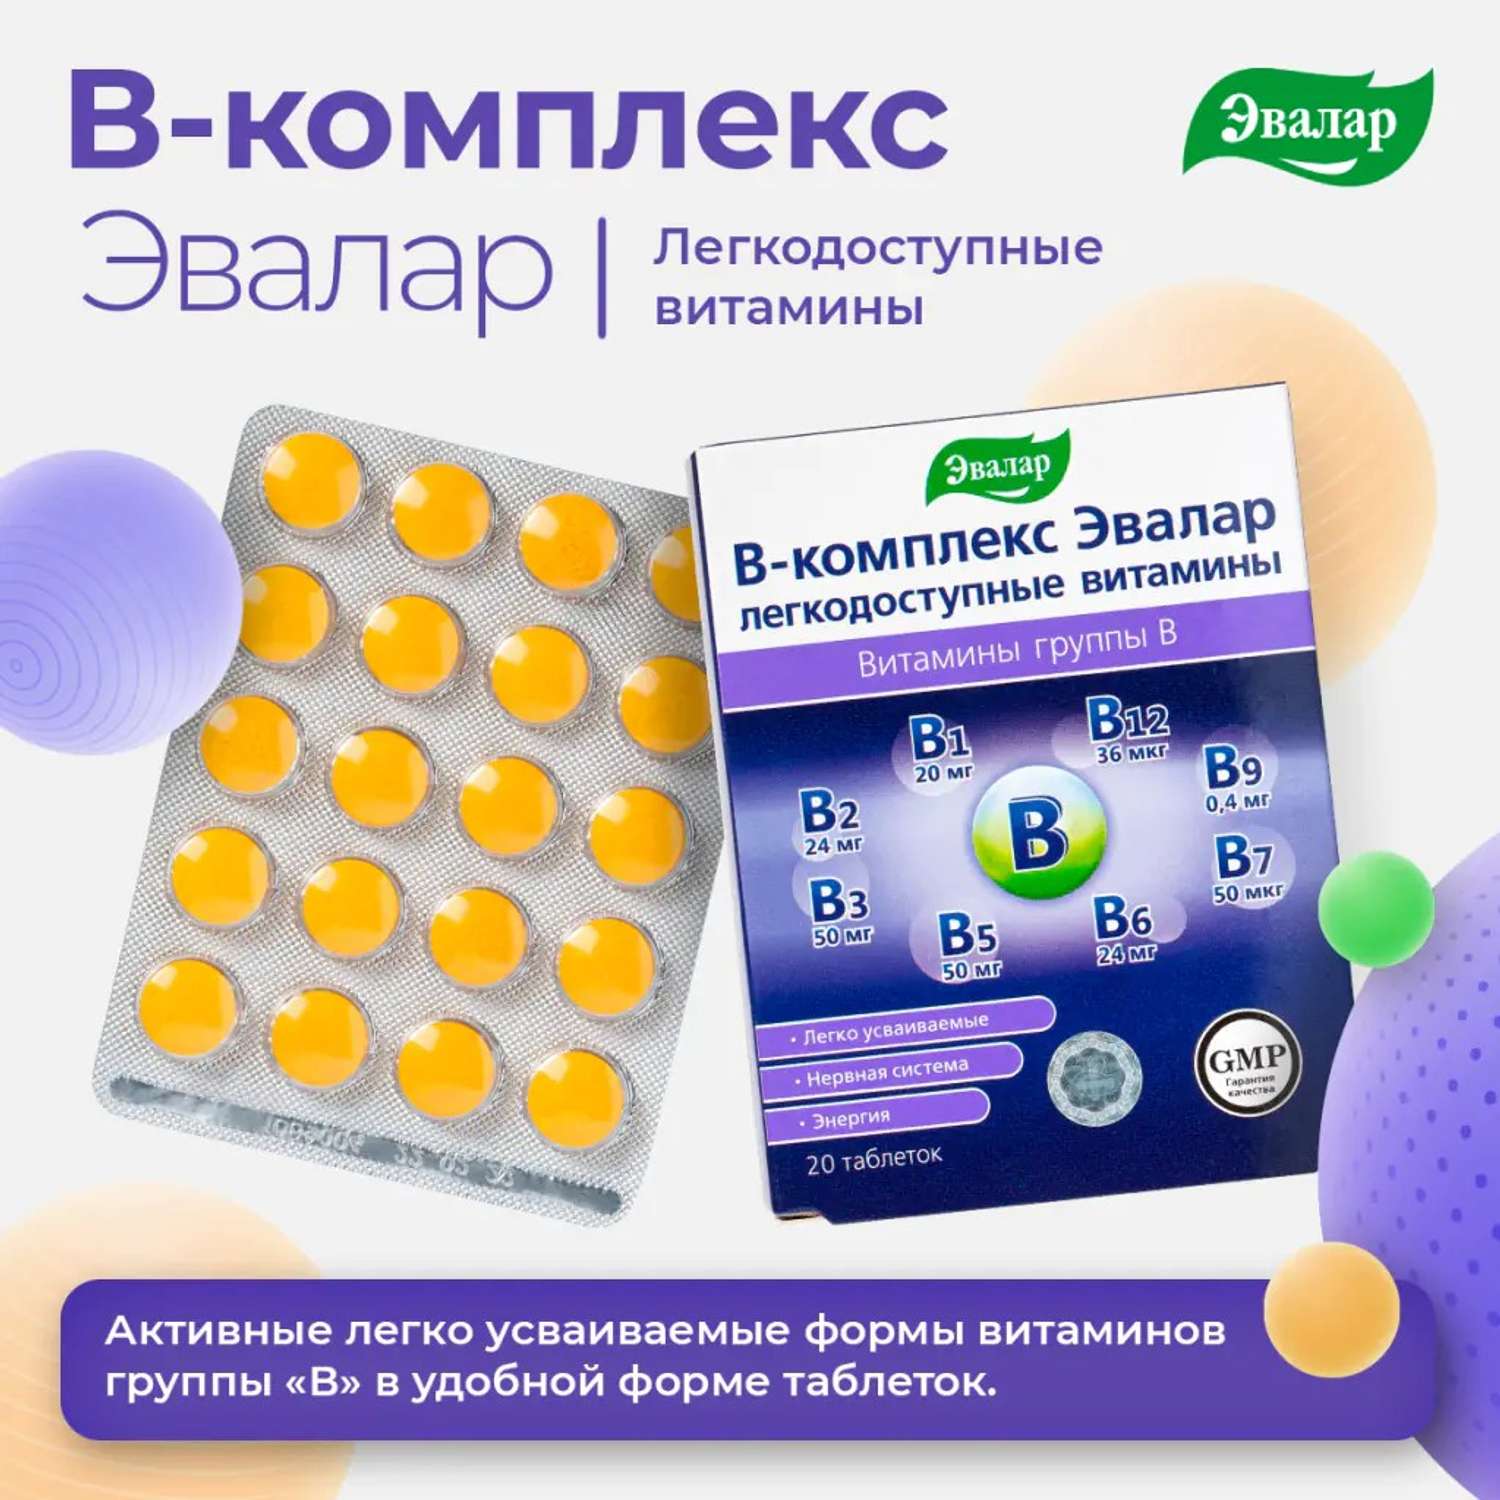 БАД Эвалар В-комплекс Эвалар легкодоступные витамины 20 таблеток - фото 5